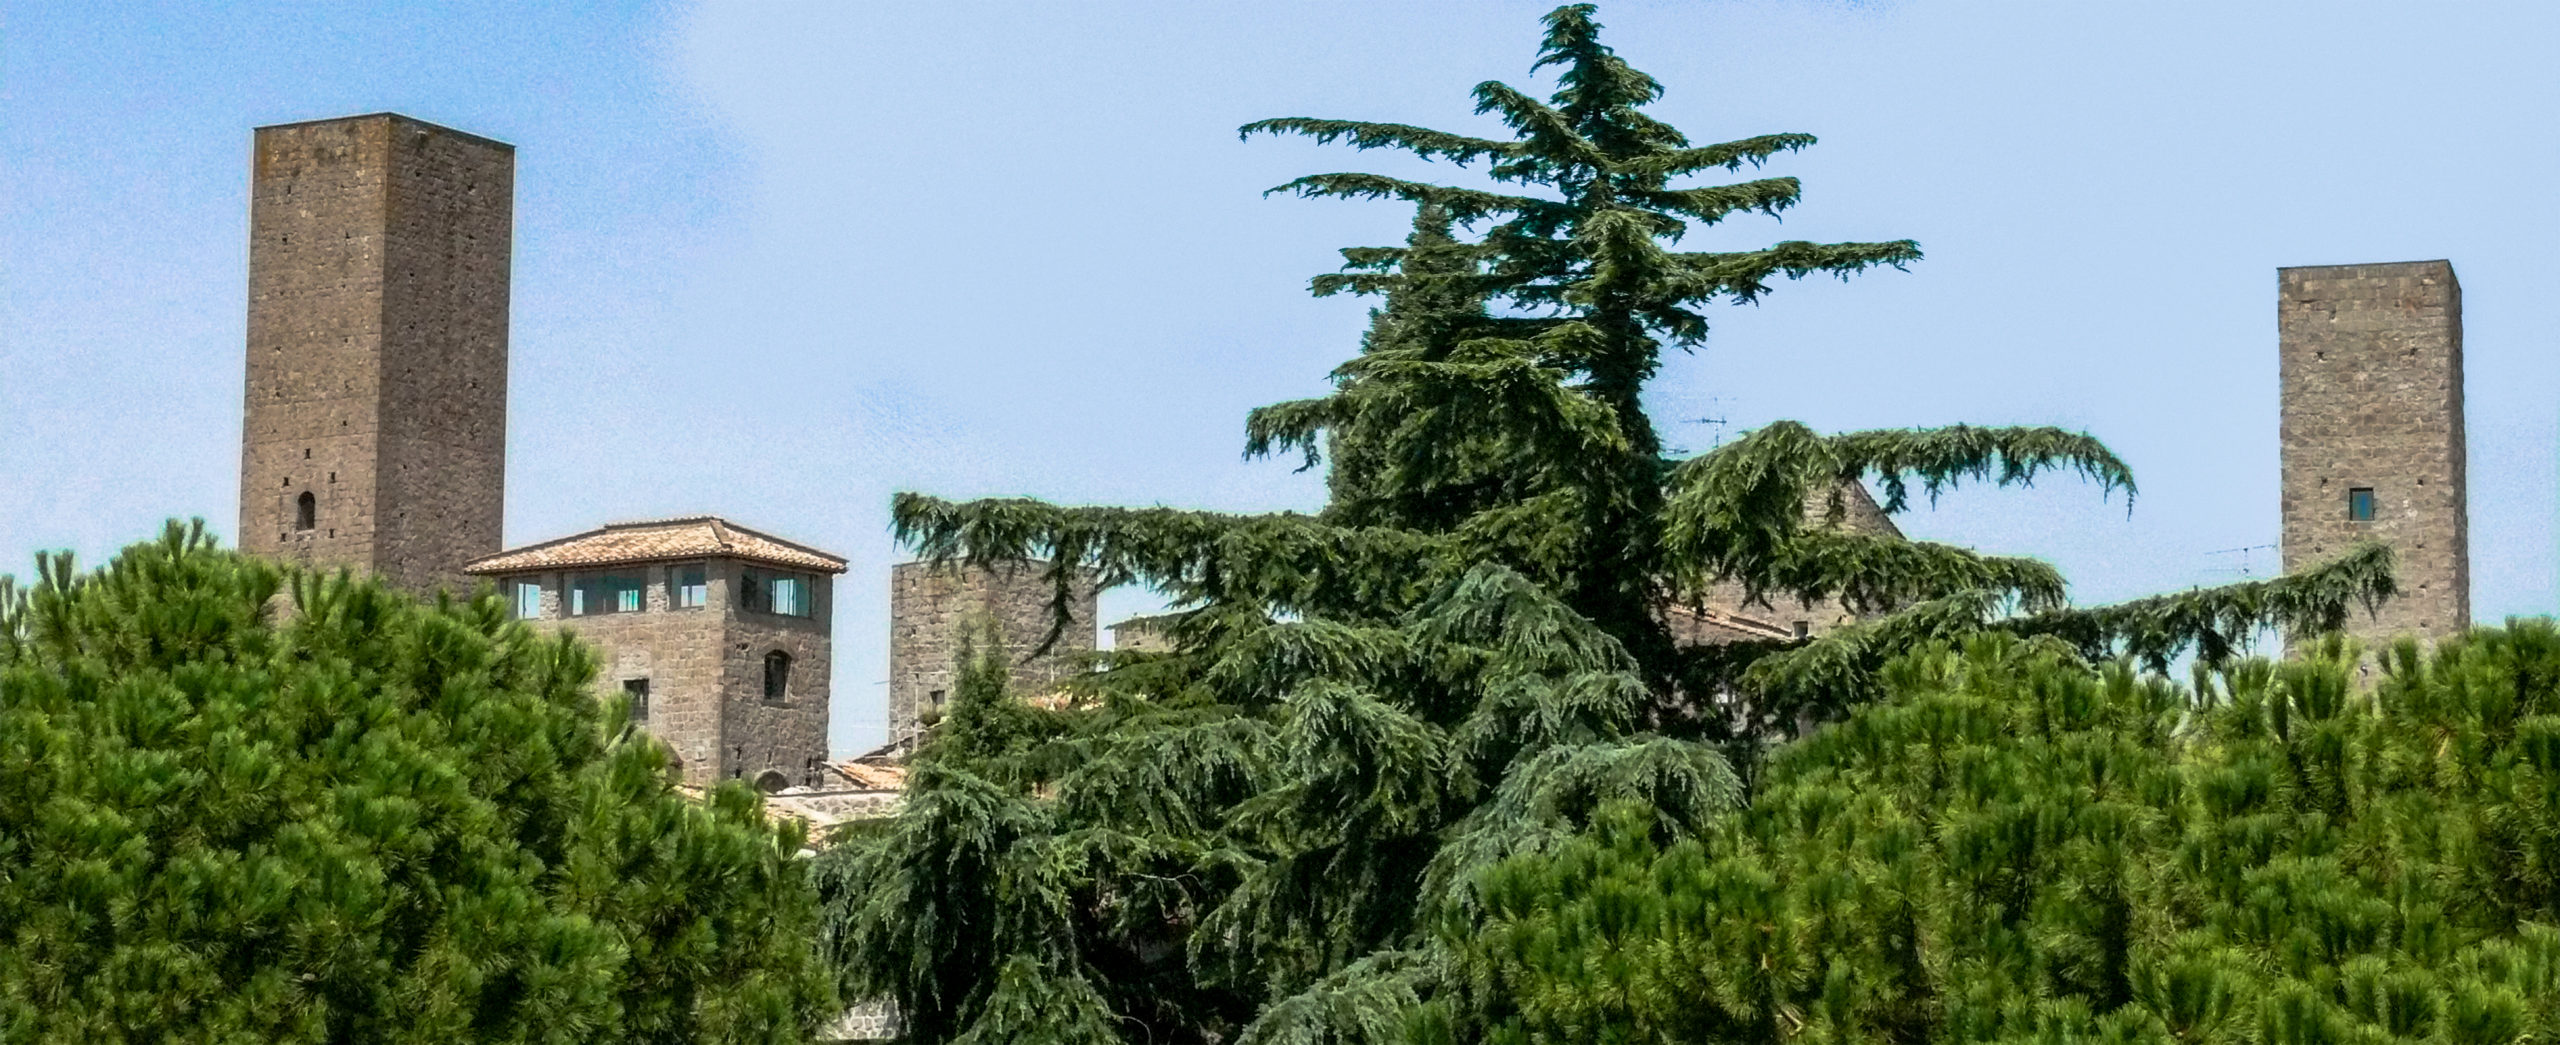 Viterbo - Veduta delle torri di San Pellegrino dal quartiere di Pianoscarano